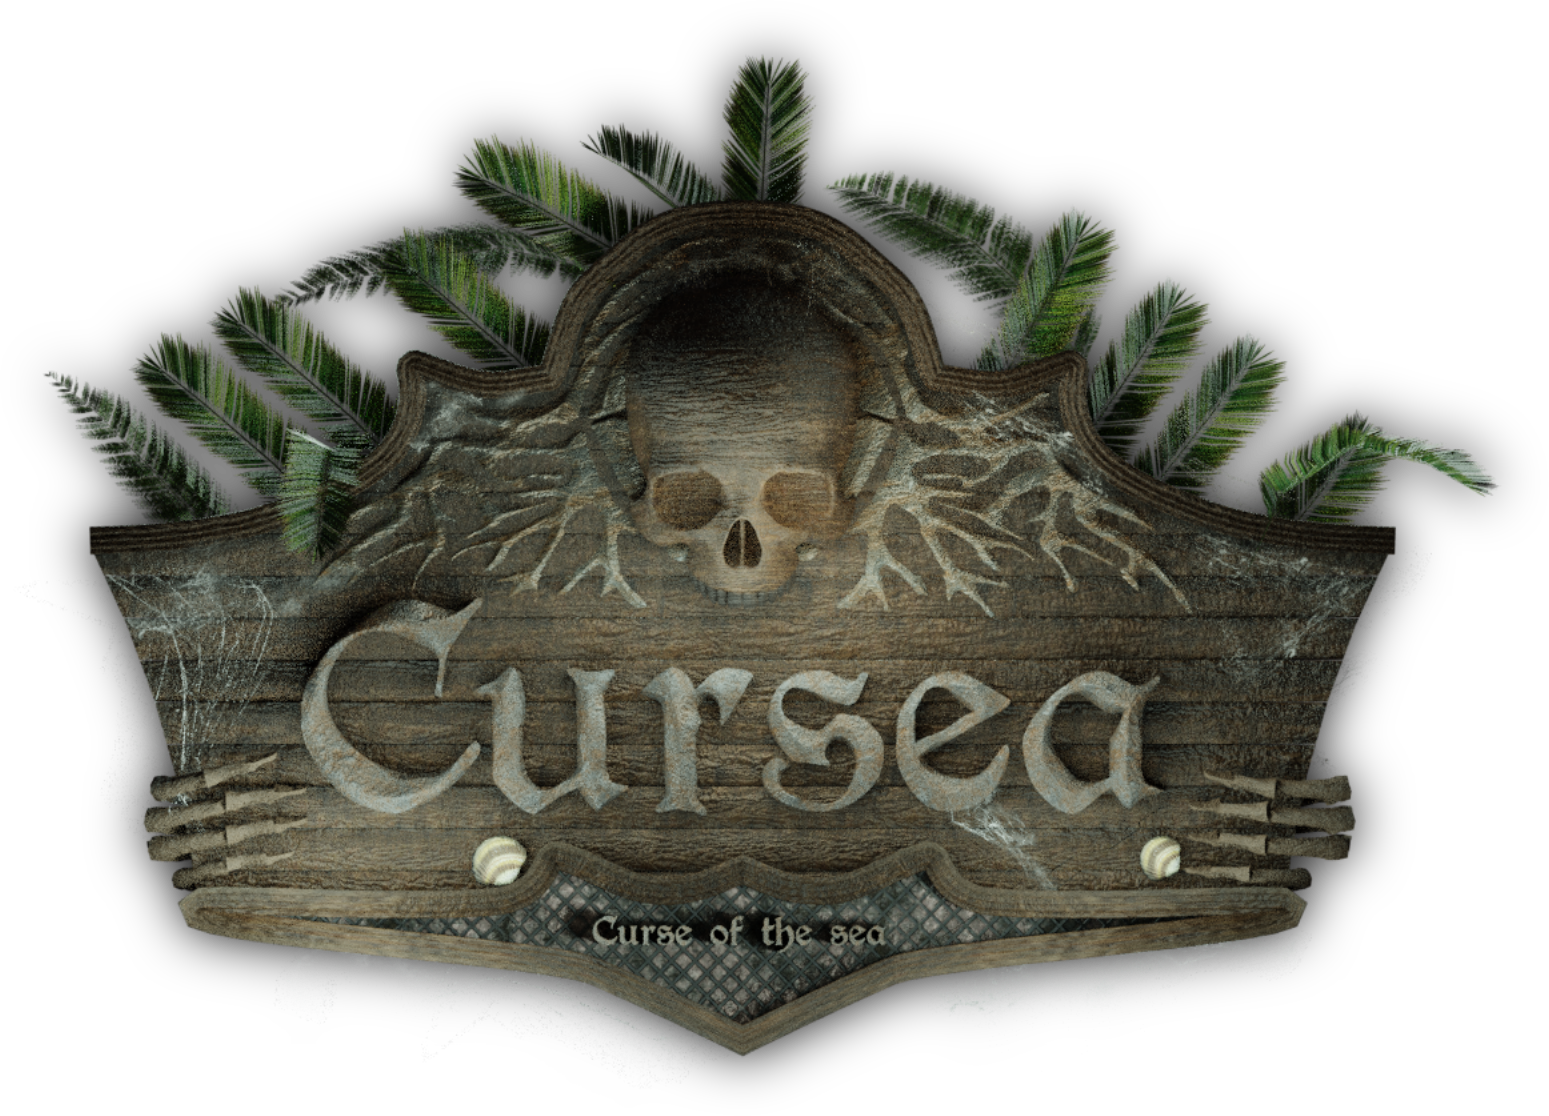 About Cursea